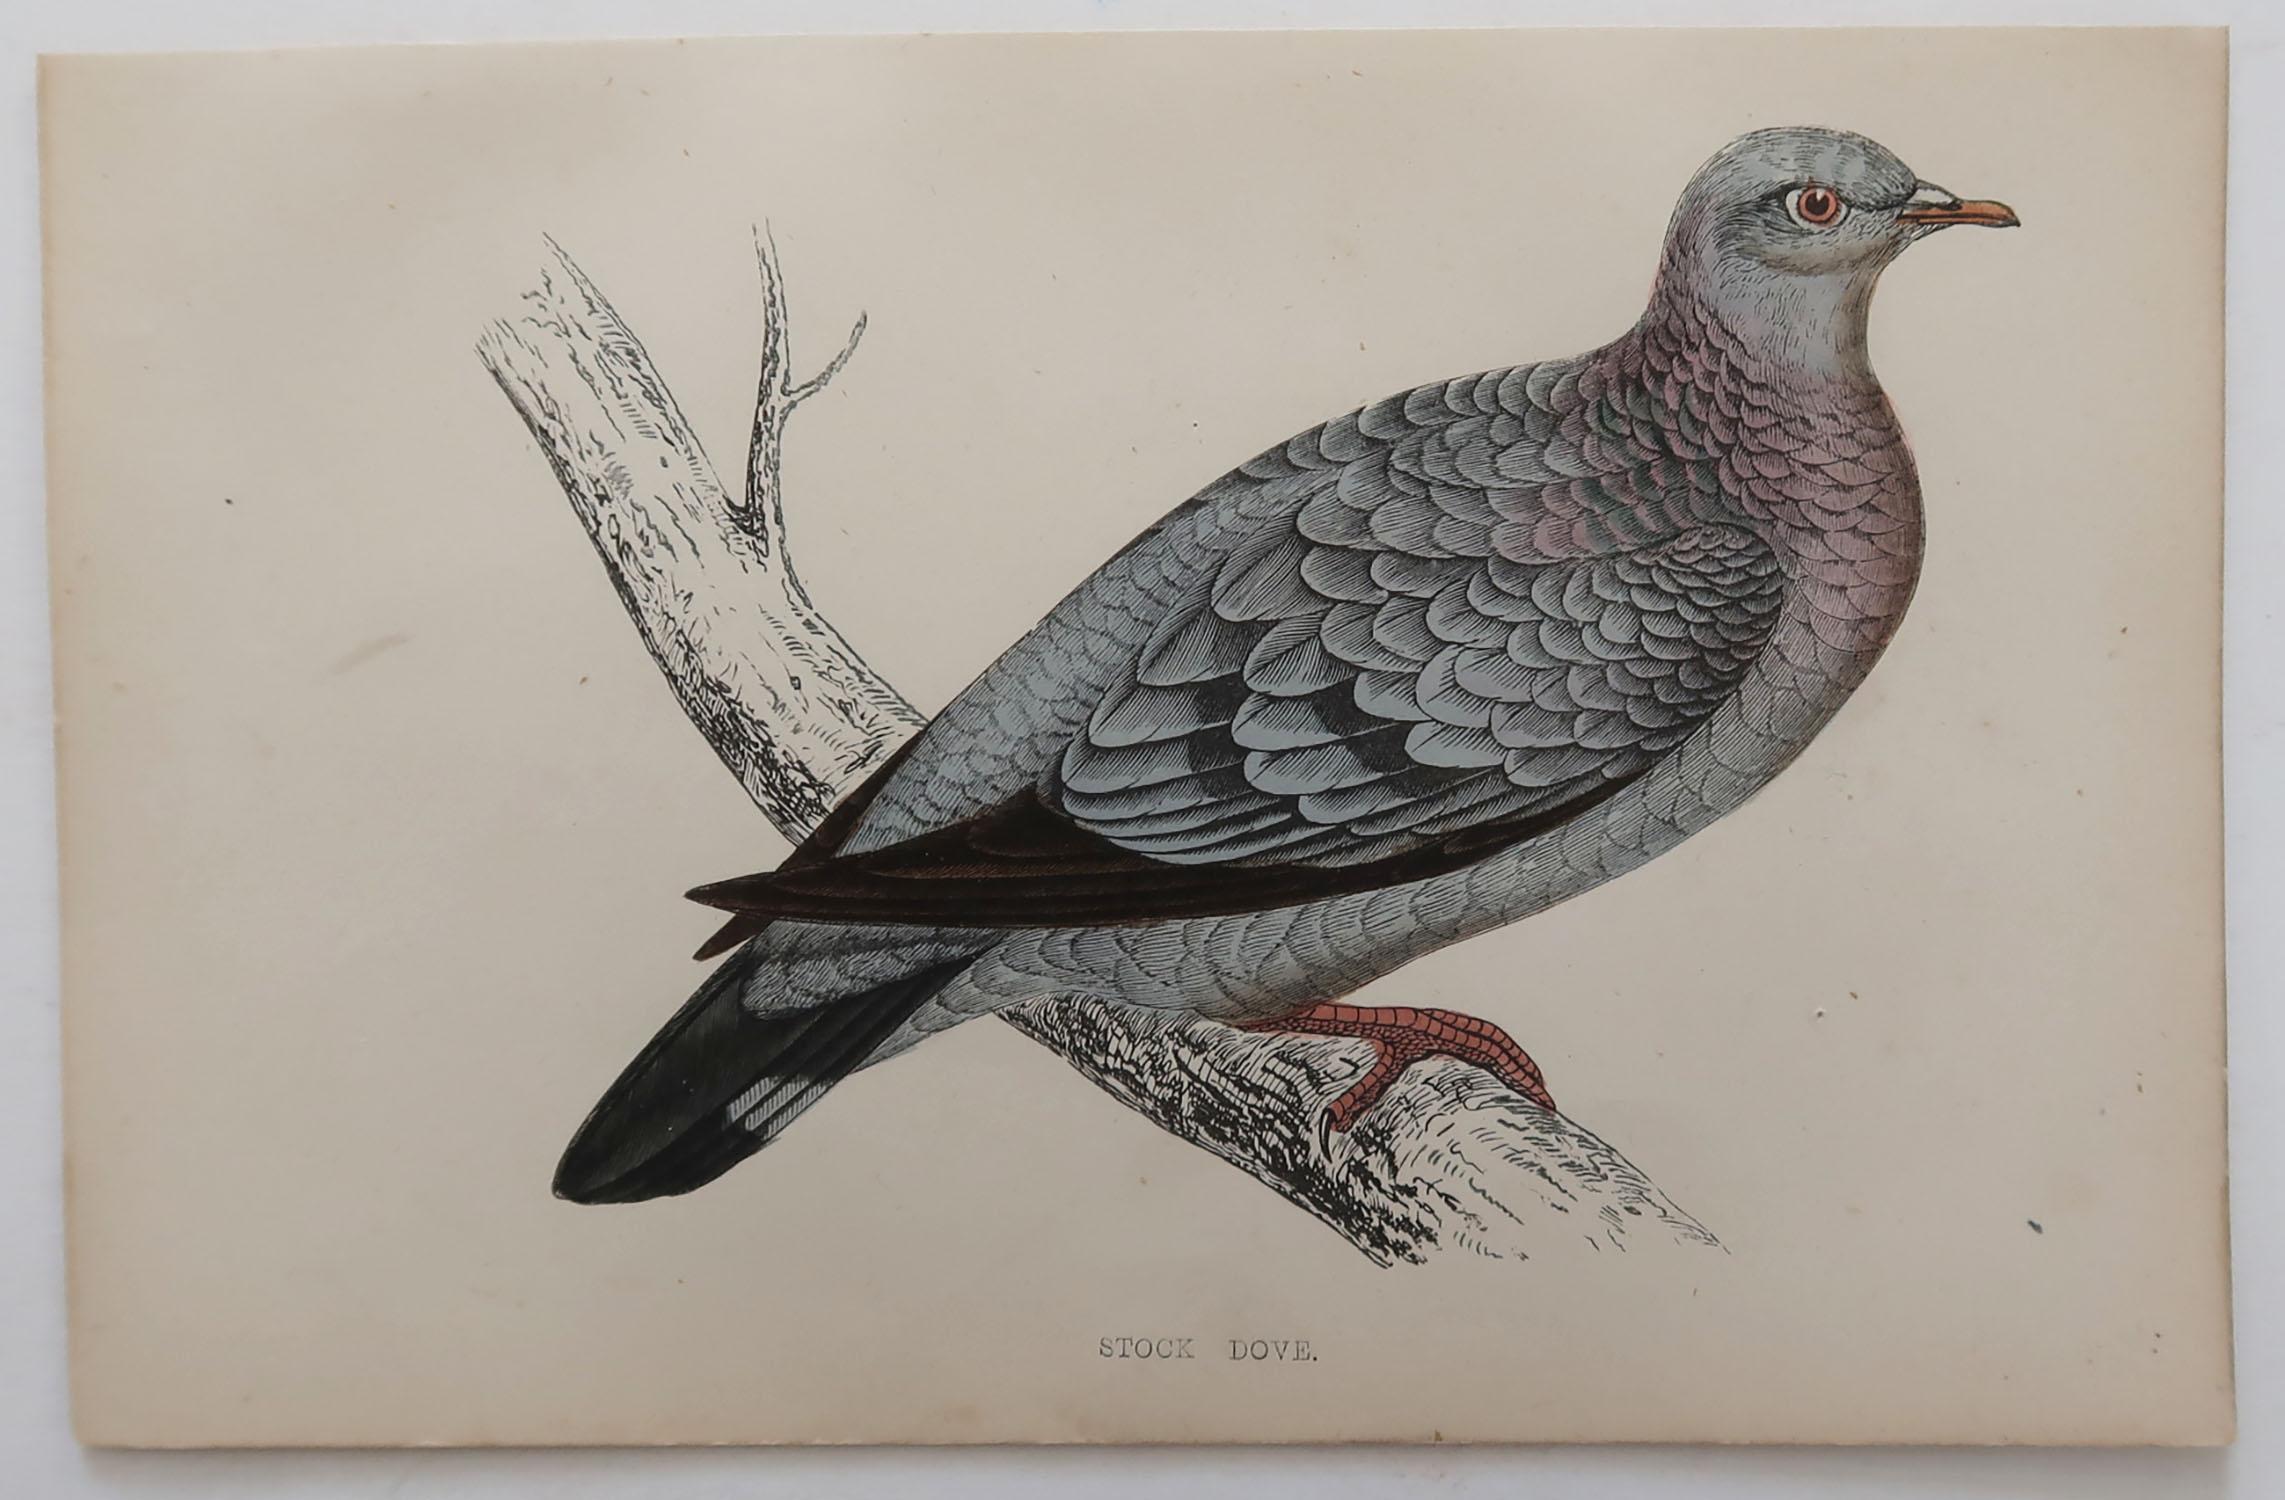 Folk Art Original Antique Bird Print, the Stock Dove, circa 1870